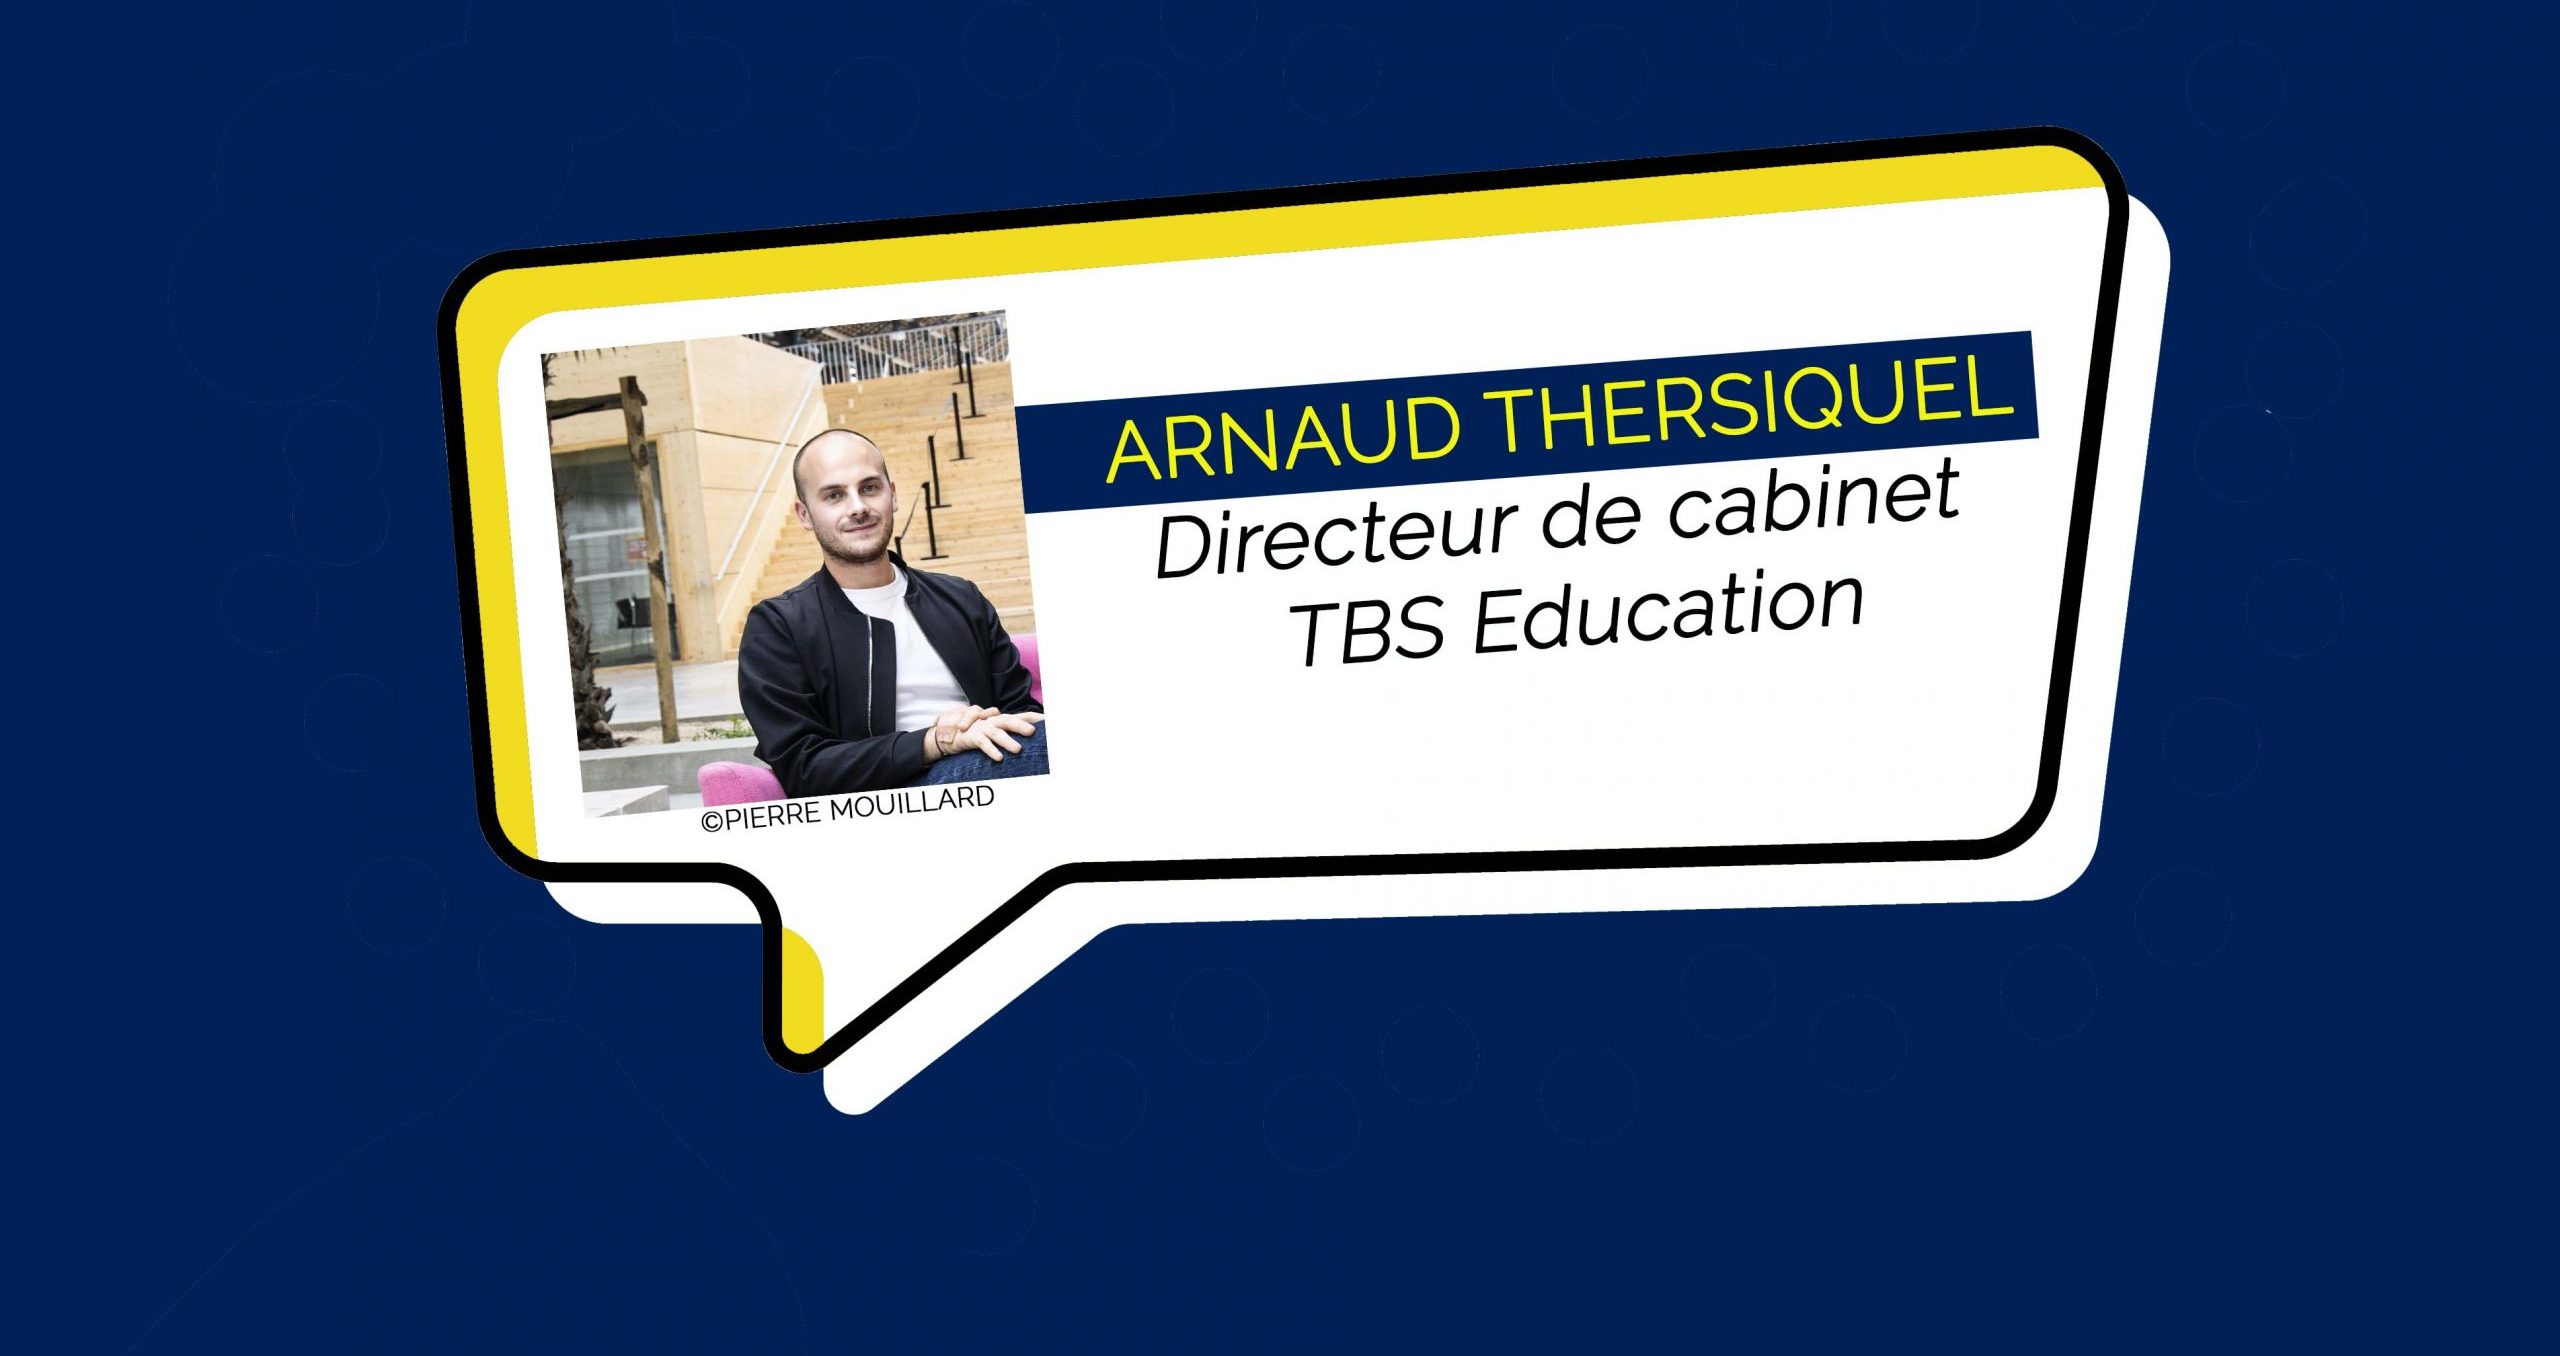 TBS Education : Arnaud Thersiquel nommé Directeur de cabinet